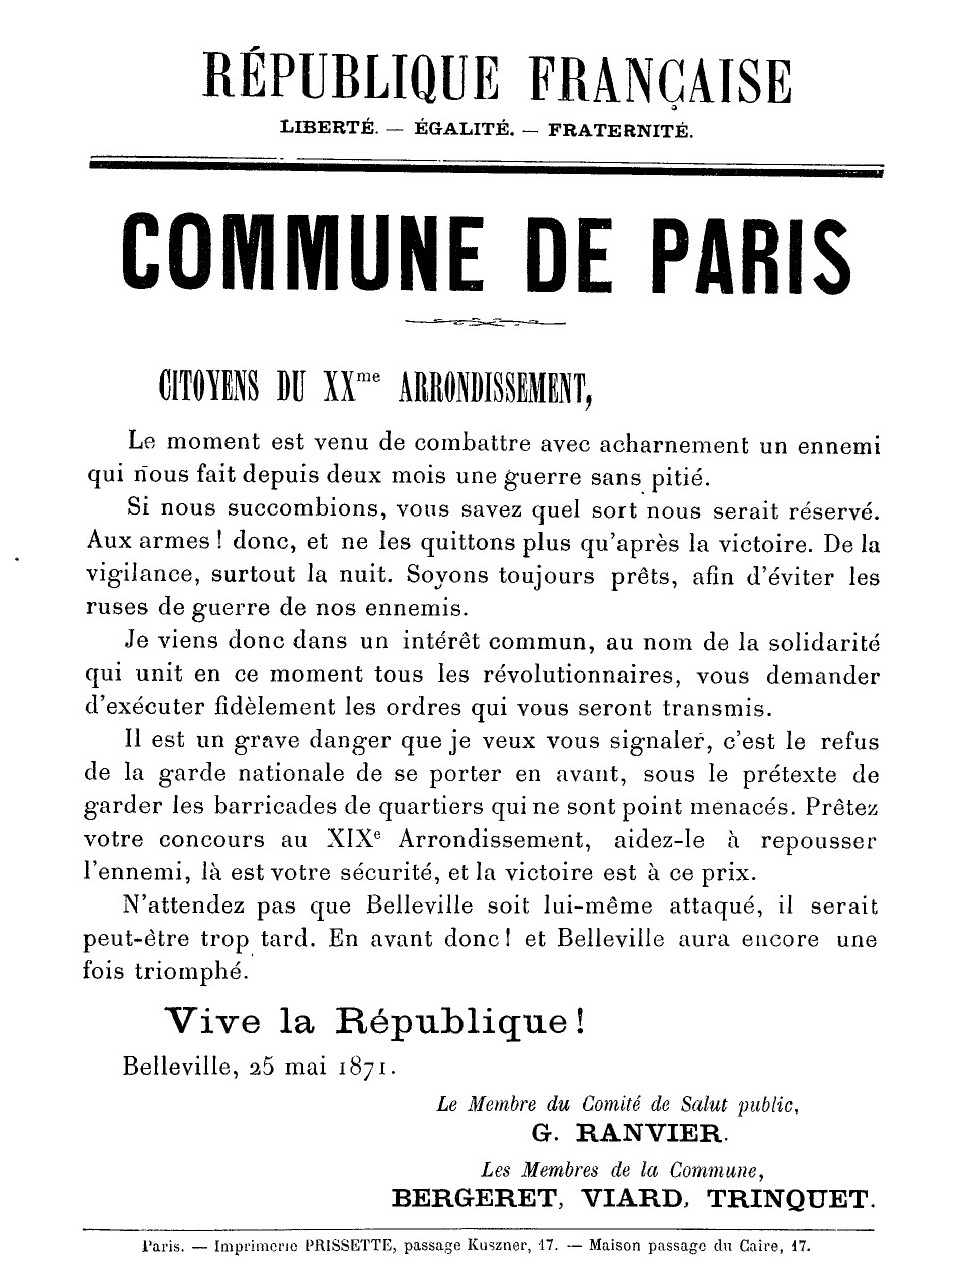 Dernière affiche de la Commune de Paris du 25 mai 1871 - Ranvier Paris 20ème